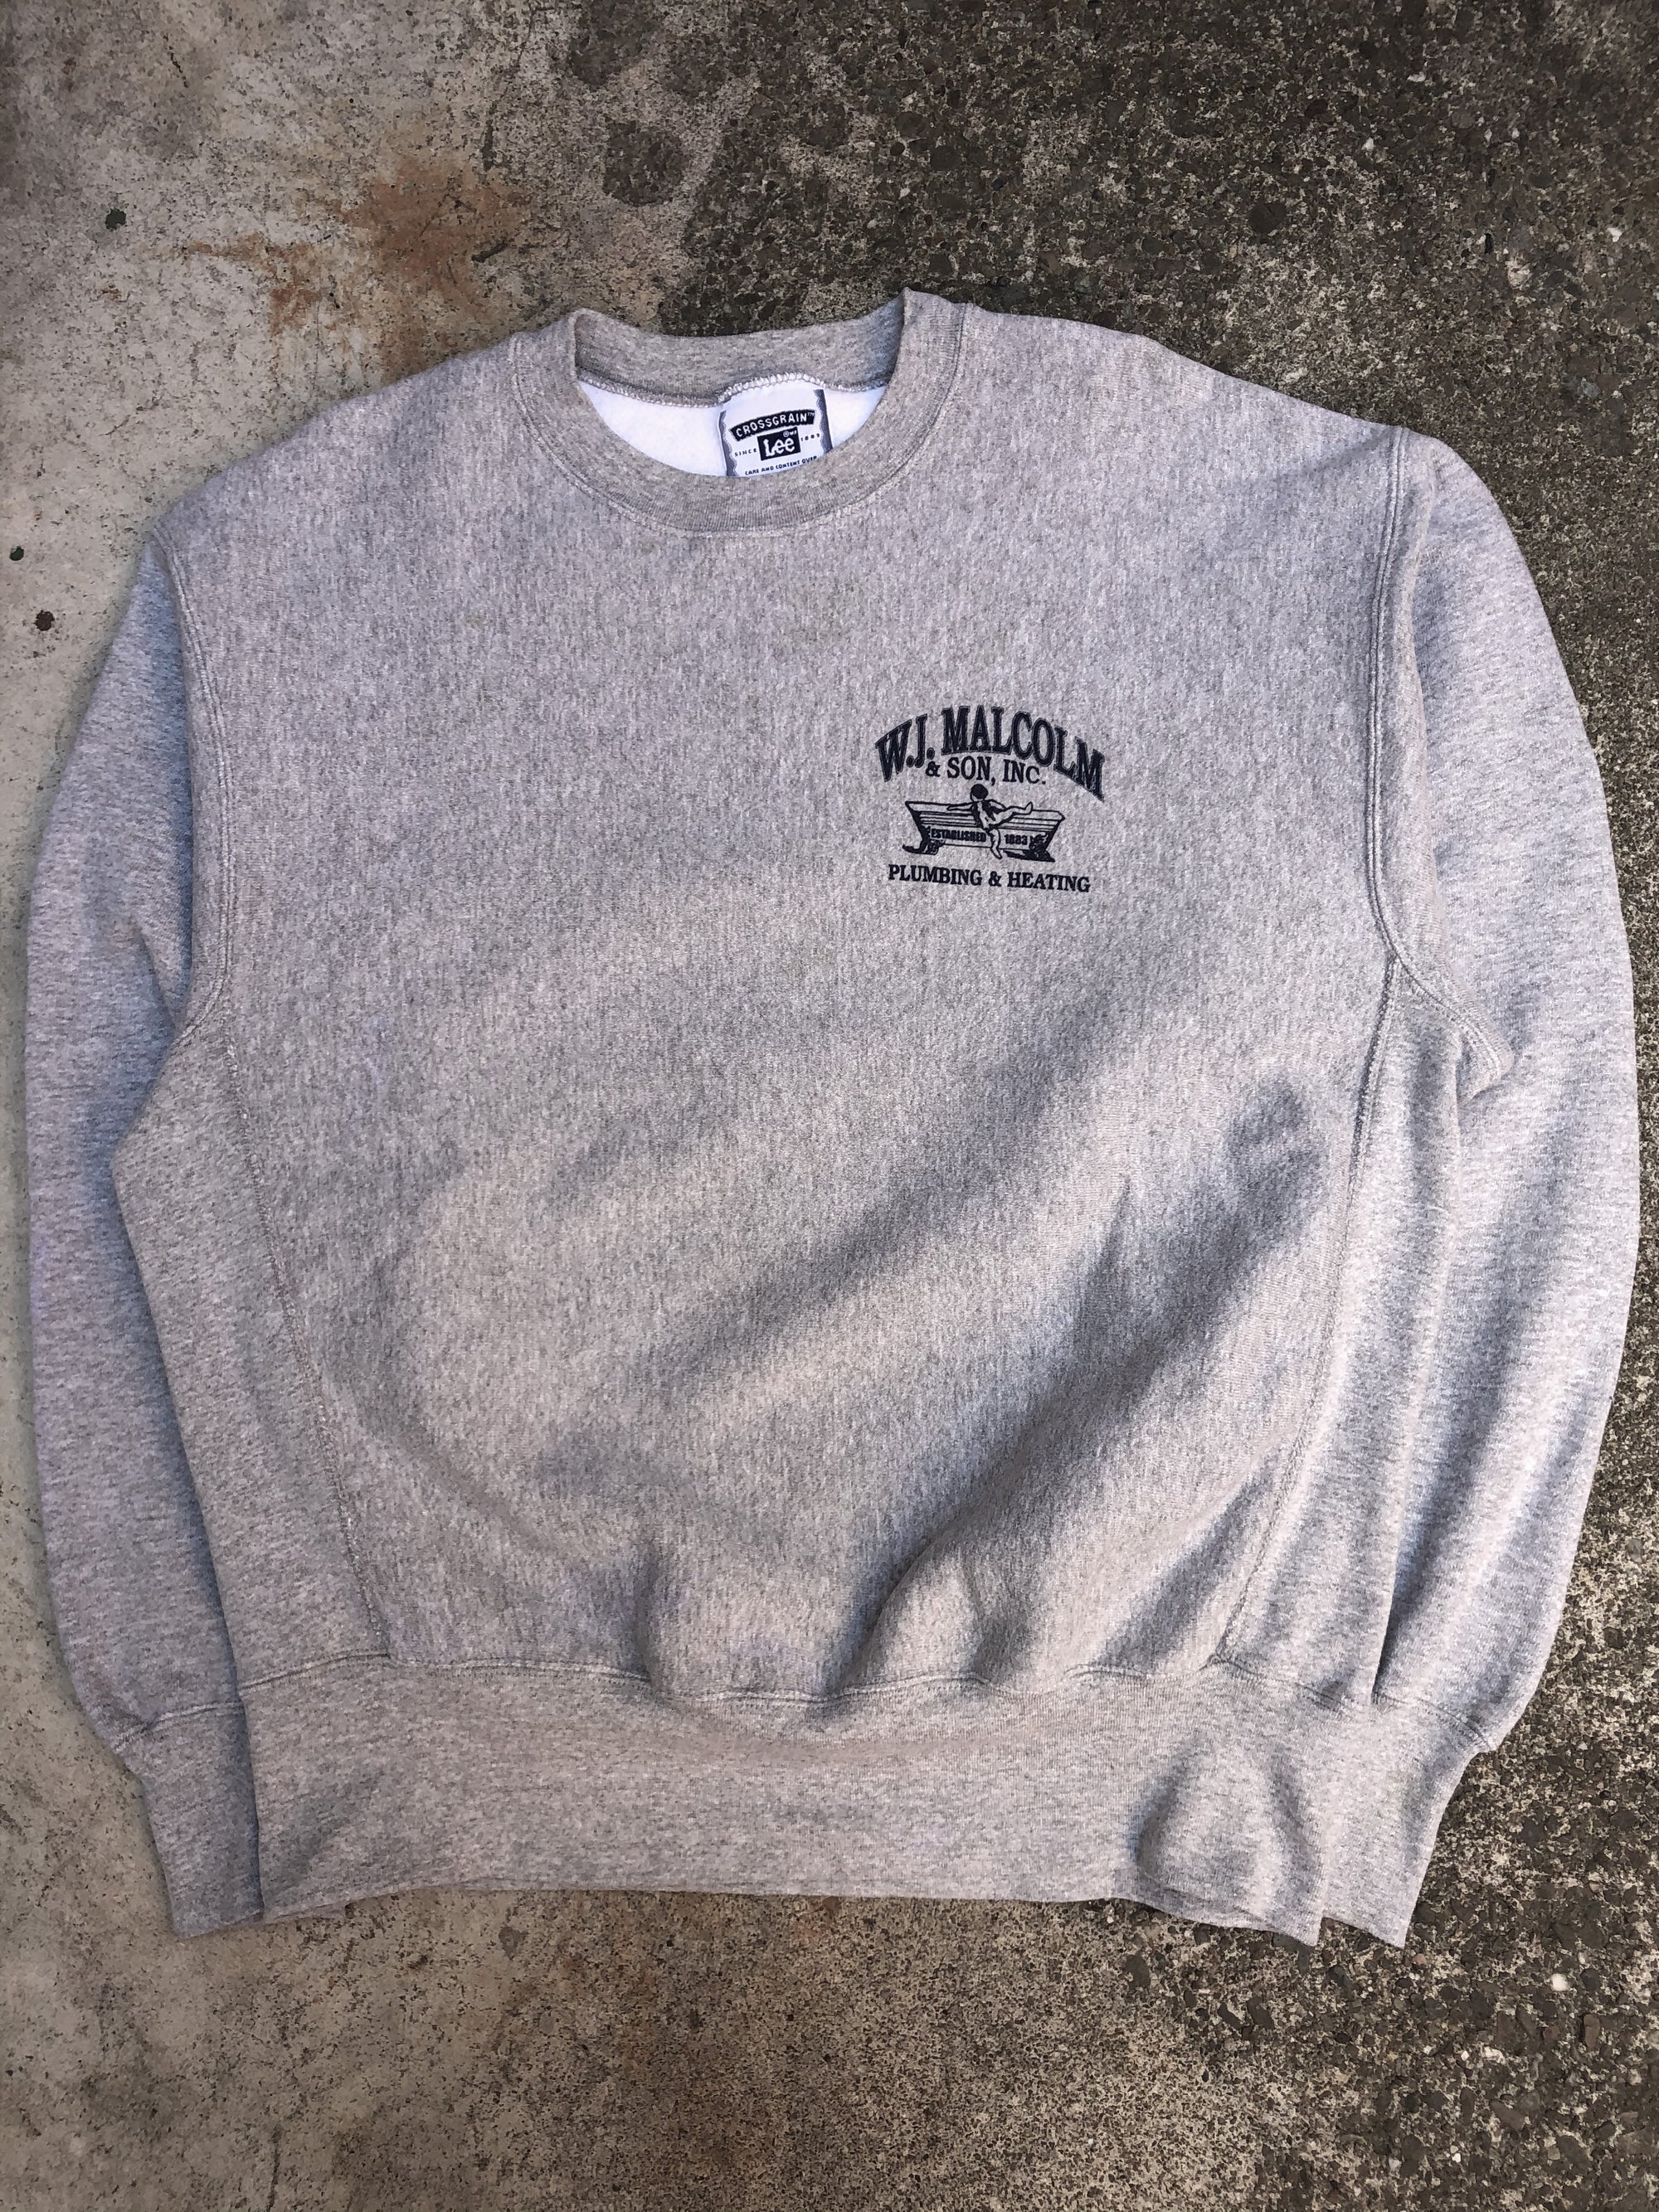 1990s Heather Grey “Cupid Plumbing” Sweatshirt